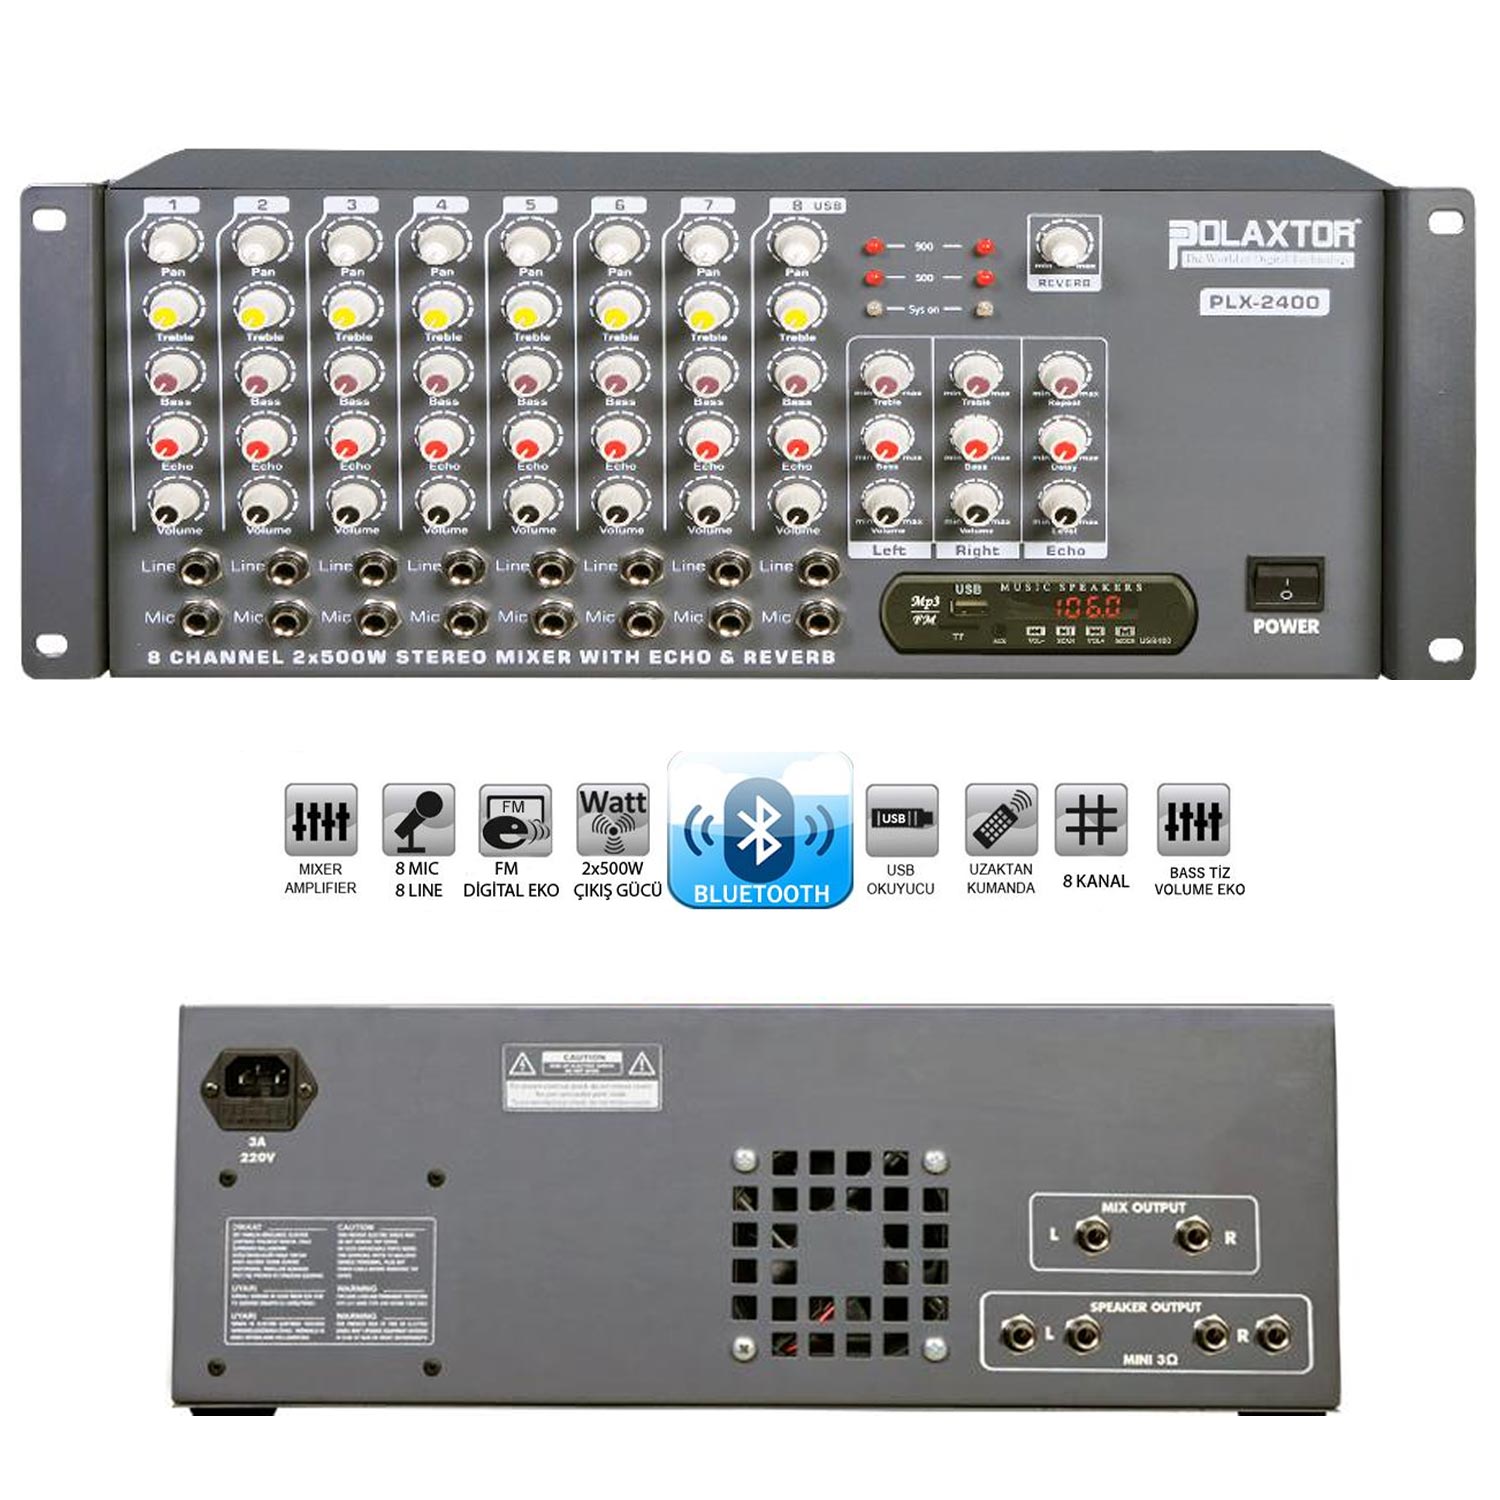 KÜP MİXER ANFİ 2X500W 8 KANAL STEREO BT/USB/SD/UK/FM/EKO POLAXTOR PLX-2400 8C